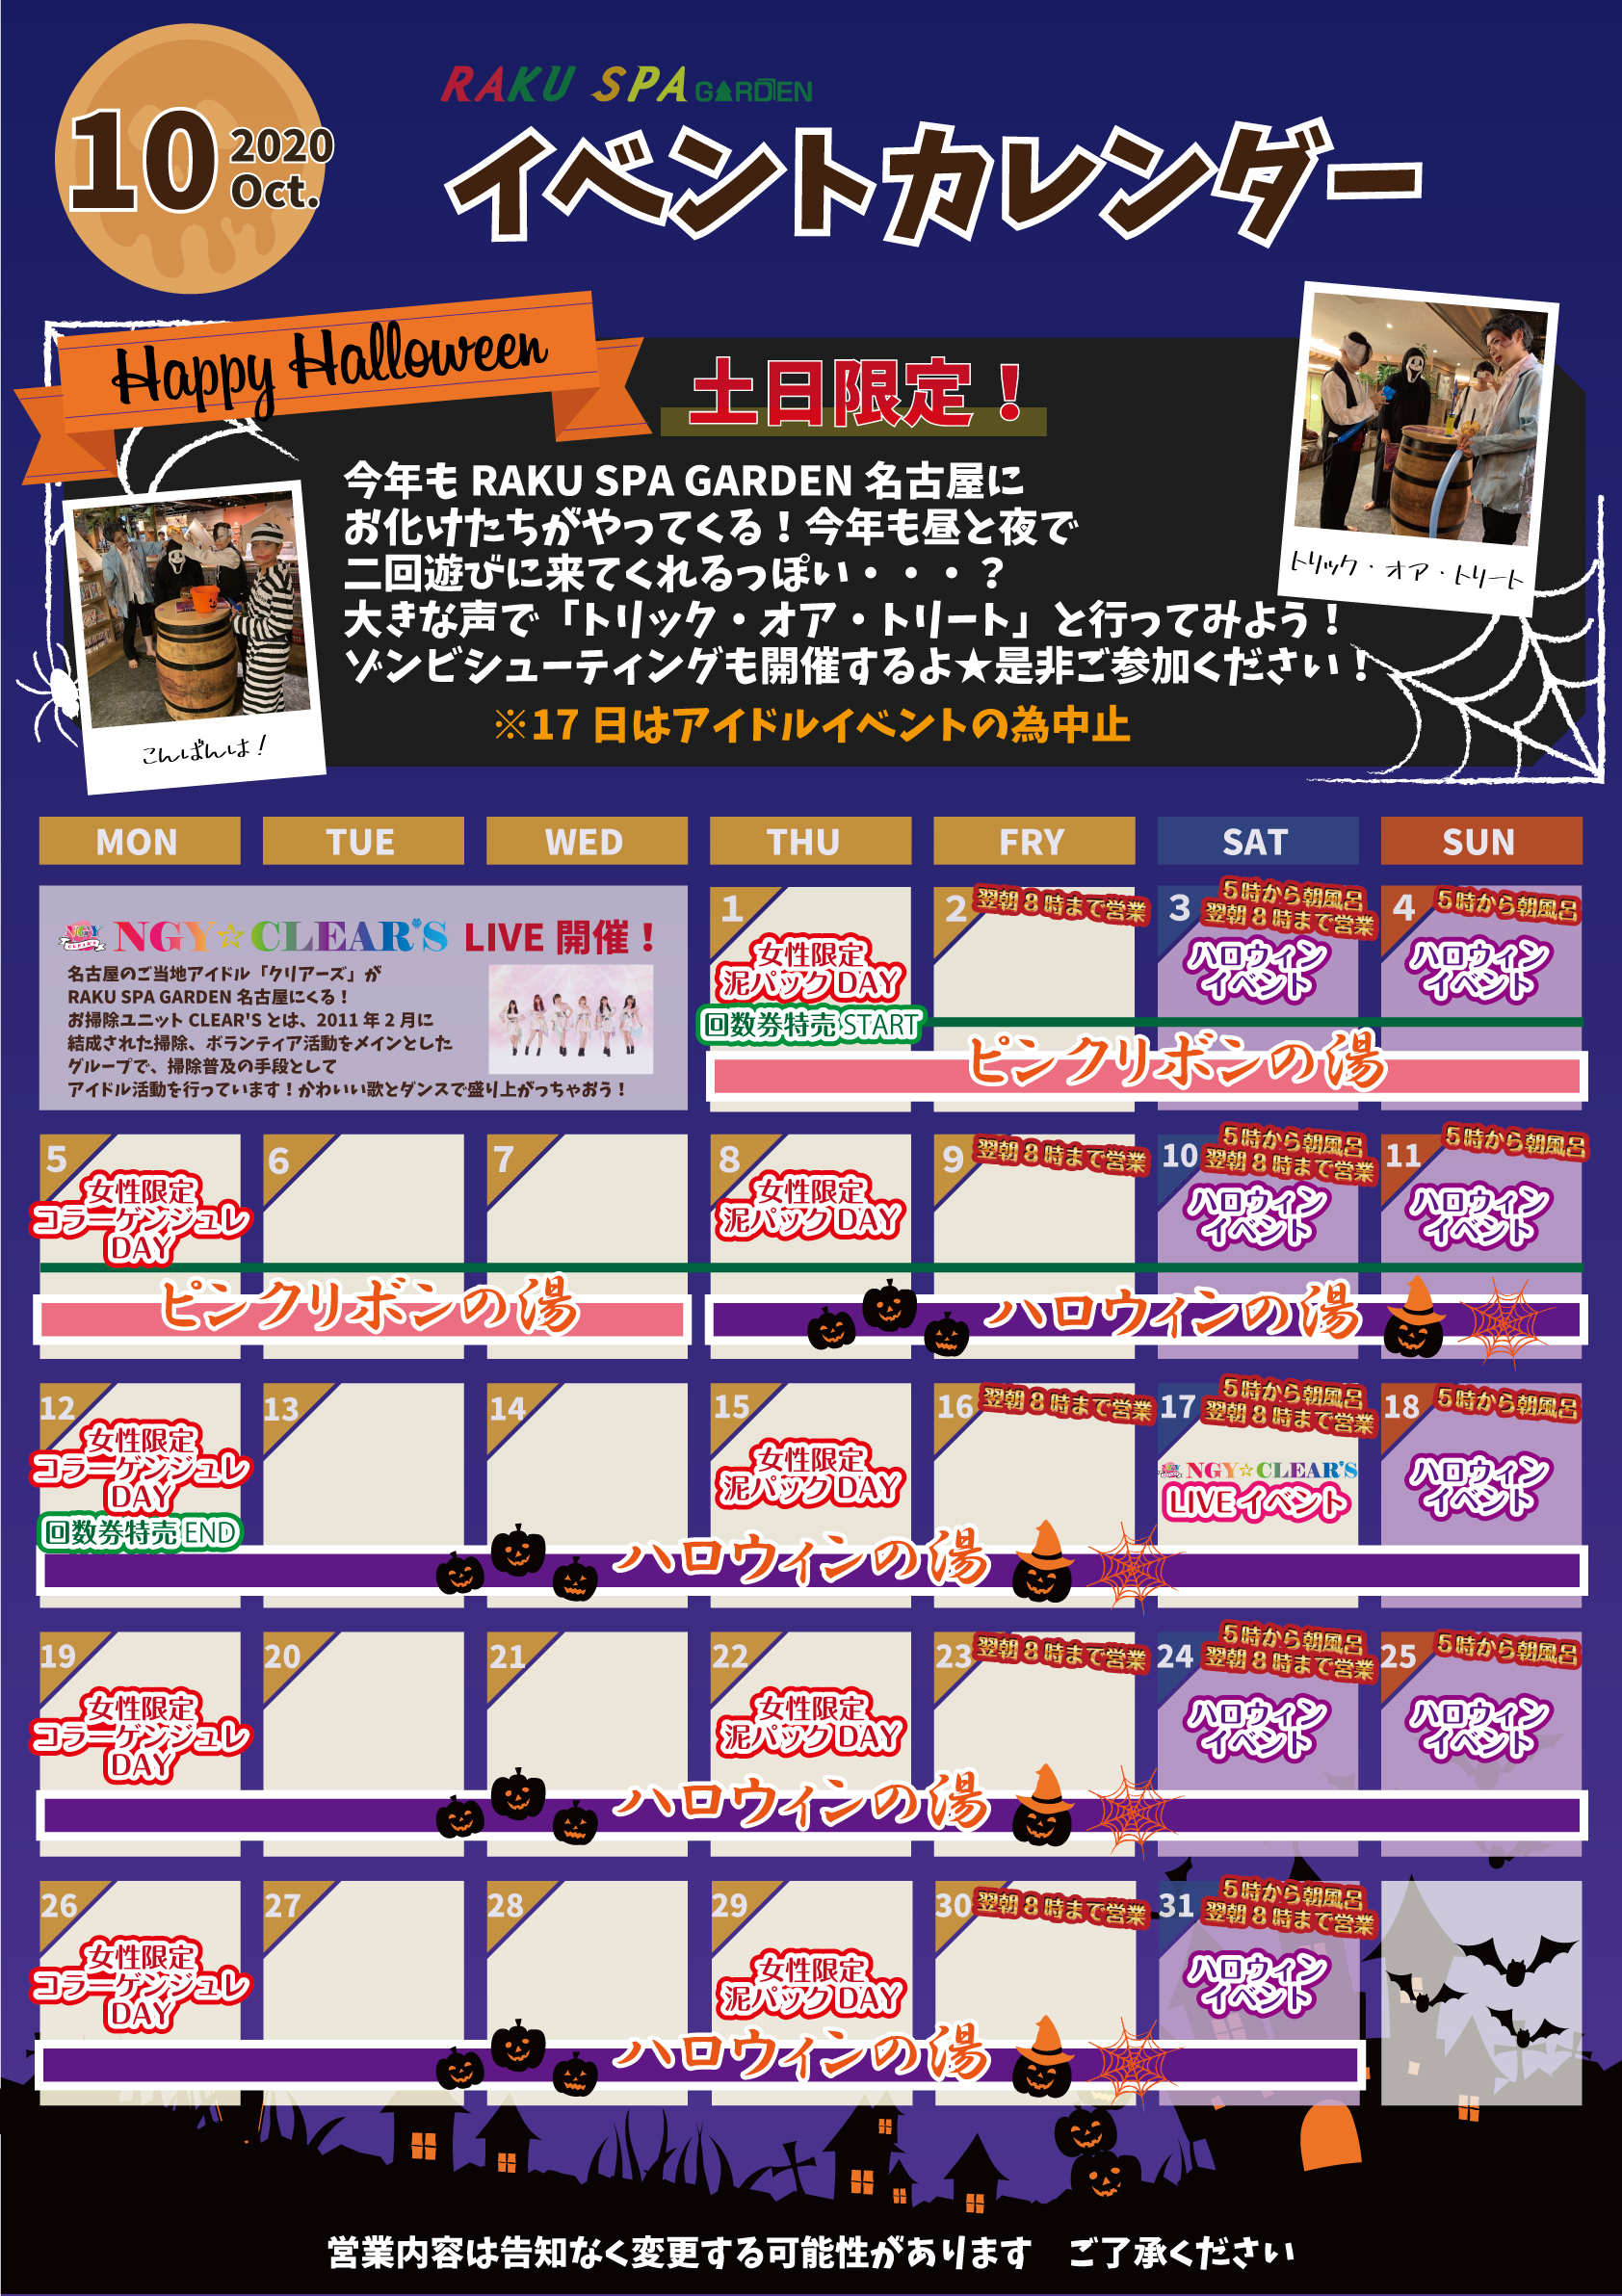 10月イベントカレンダーご案内 らくスパガーデン名古屋